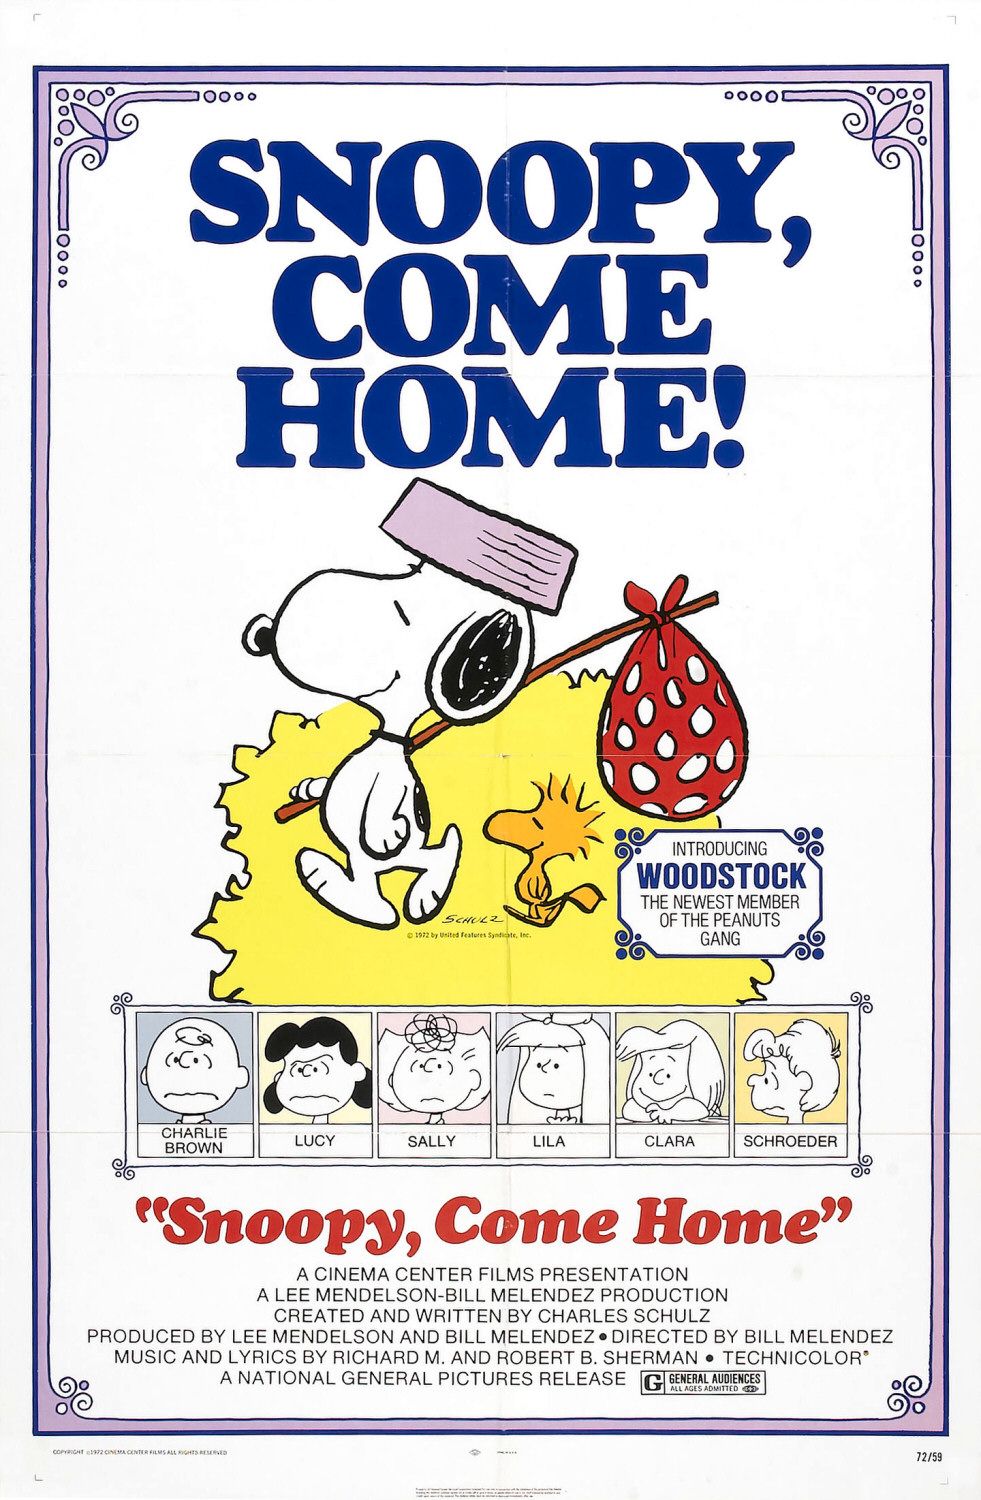 Nonton film Snoopy Come Home layarkaca21 indoxx1 ganool online streaming terbaru